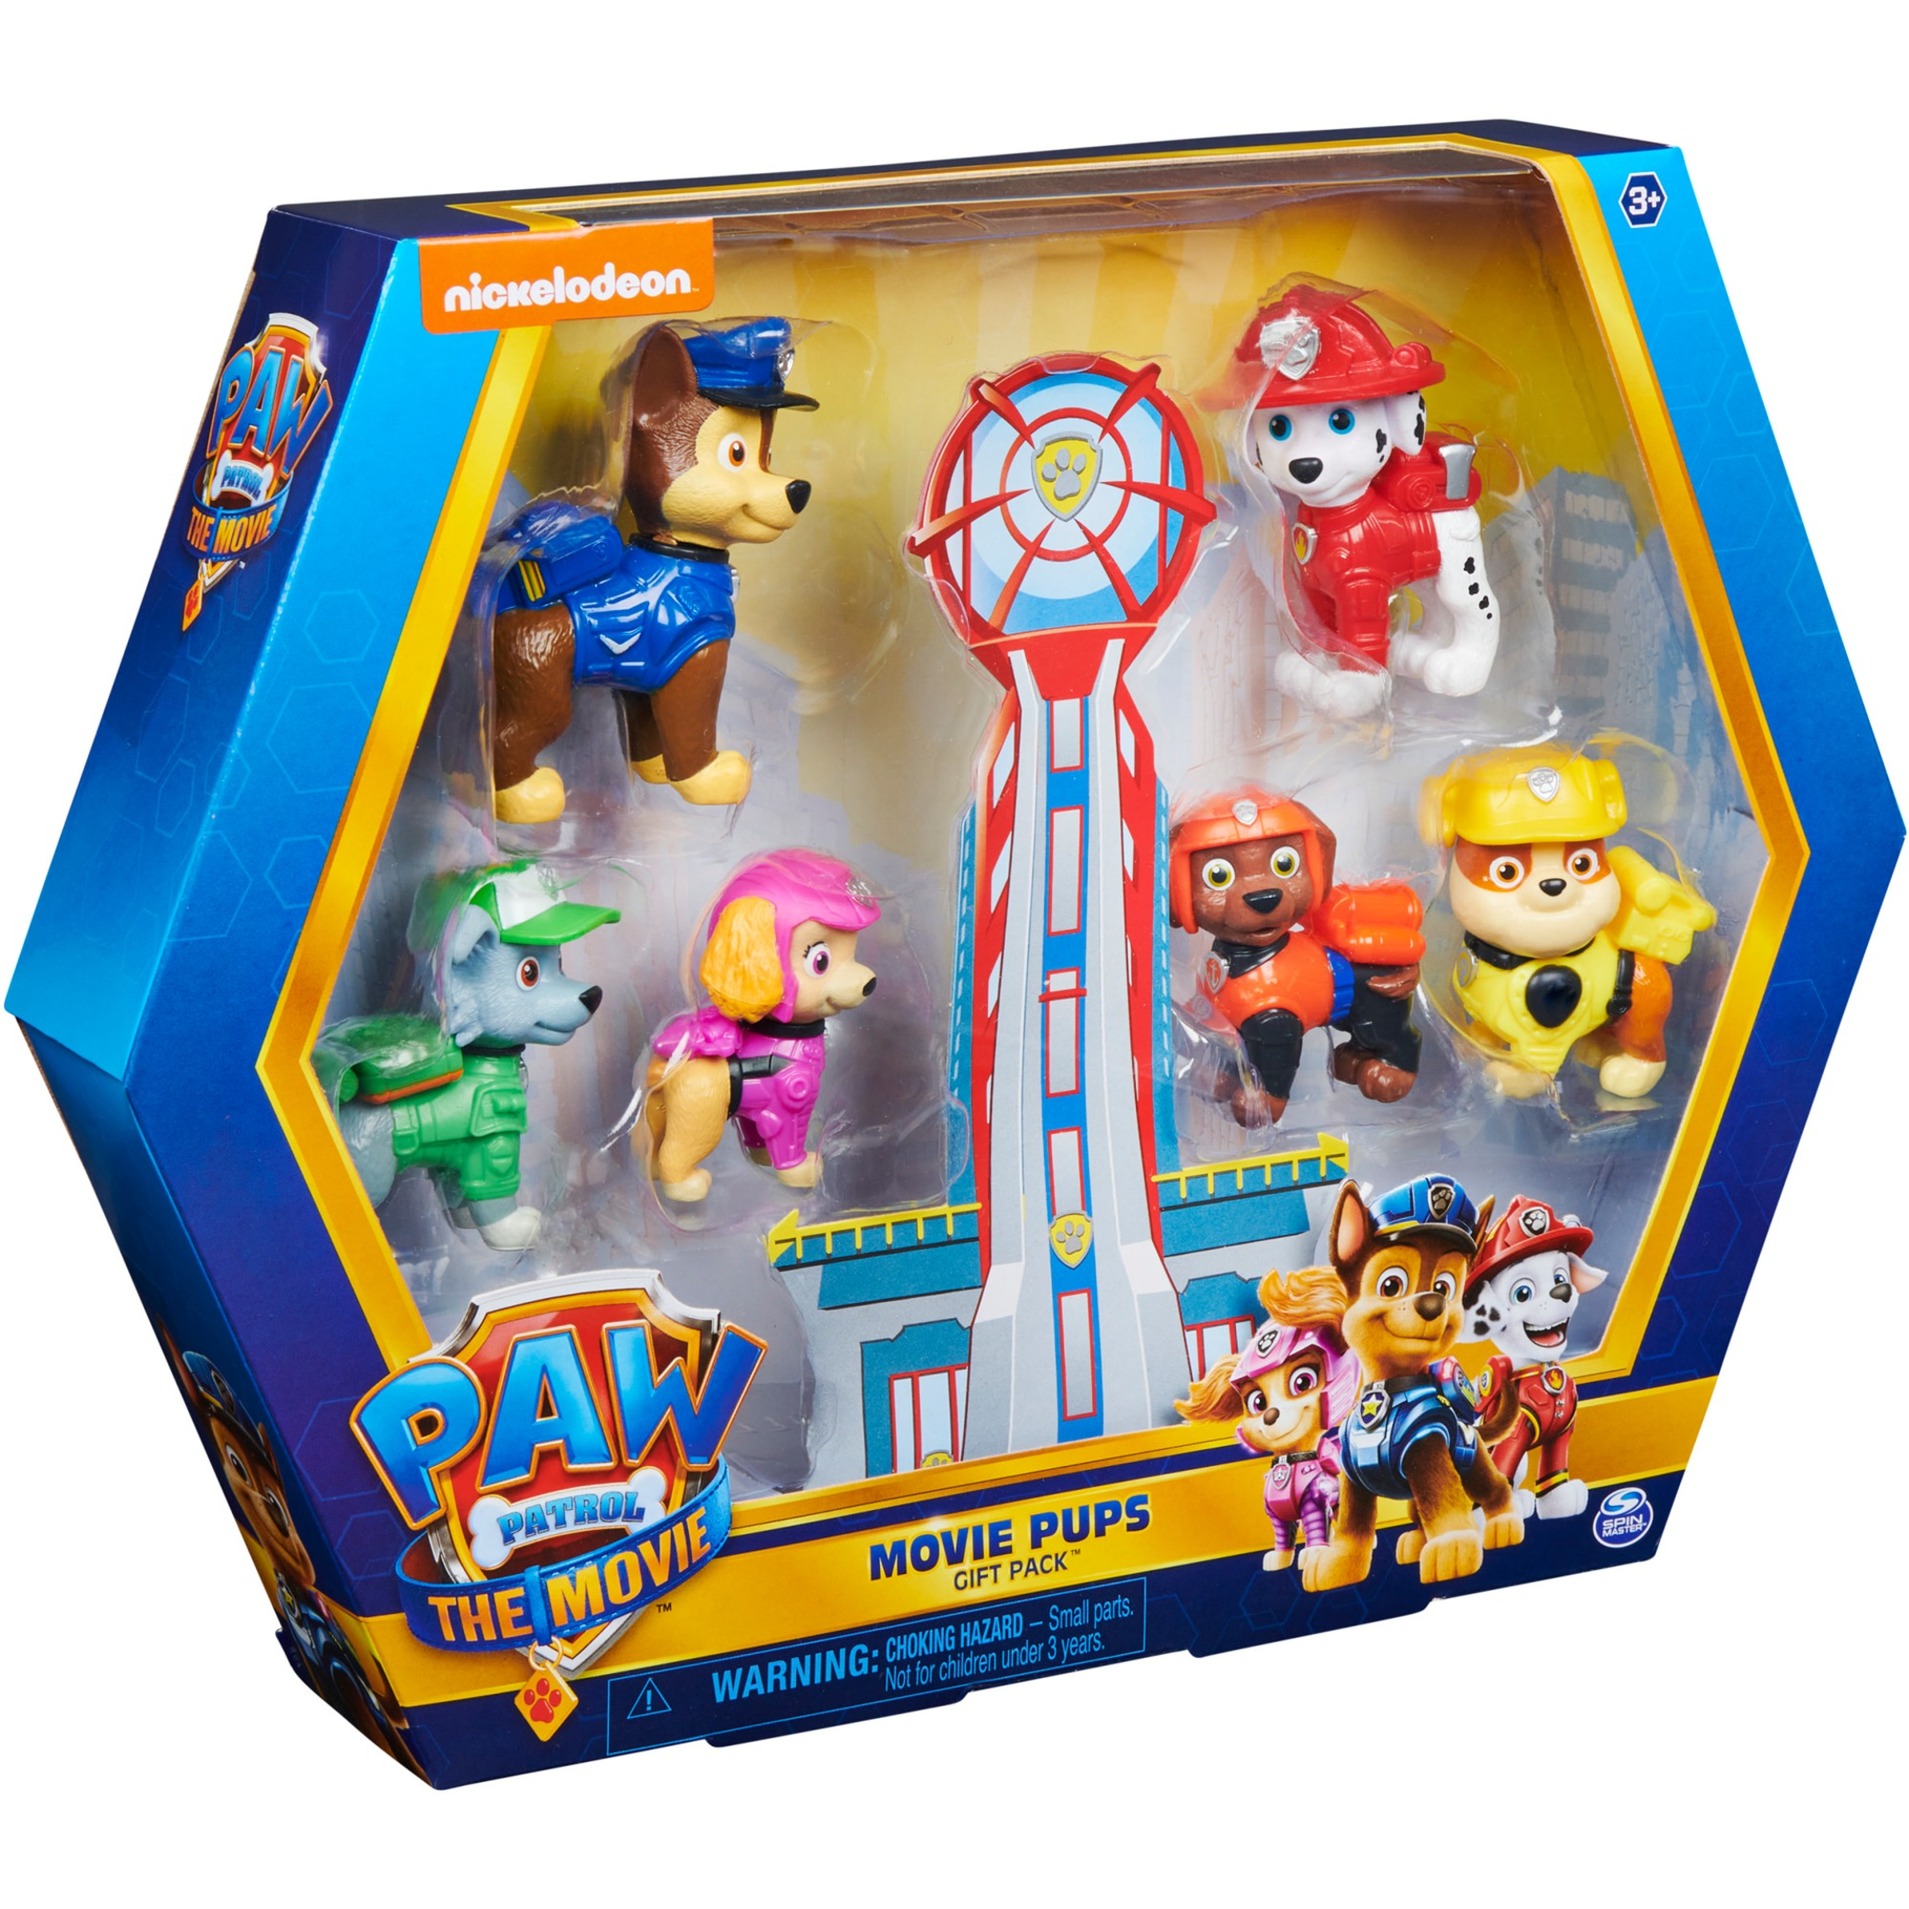 Image of Alternate - Paw Patrol Geschenkset mit 6 Kinofilm-Spielzeugfiguren zum Sammeln, Spielfigur online einkaufen bei Alternate